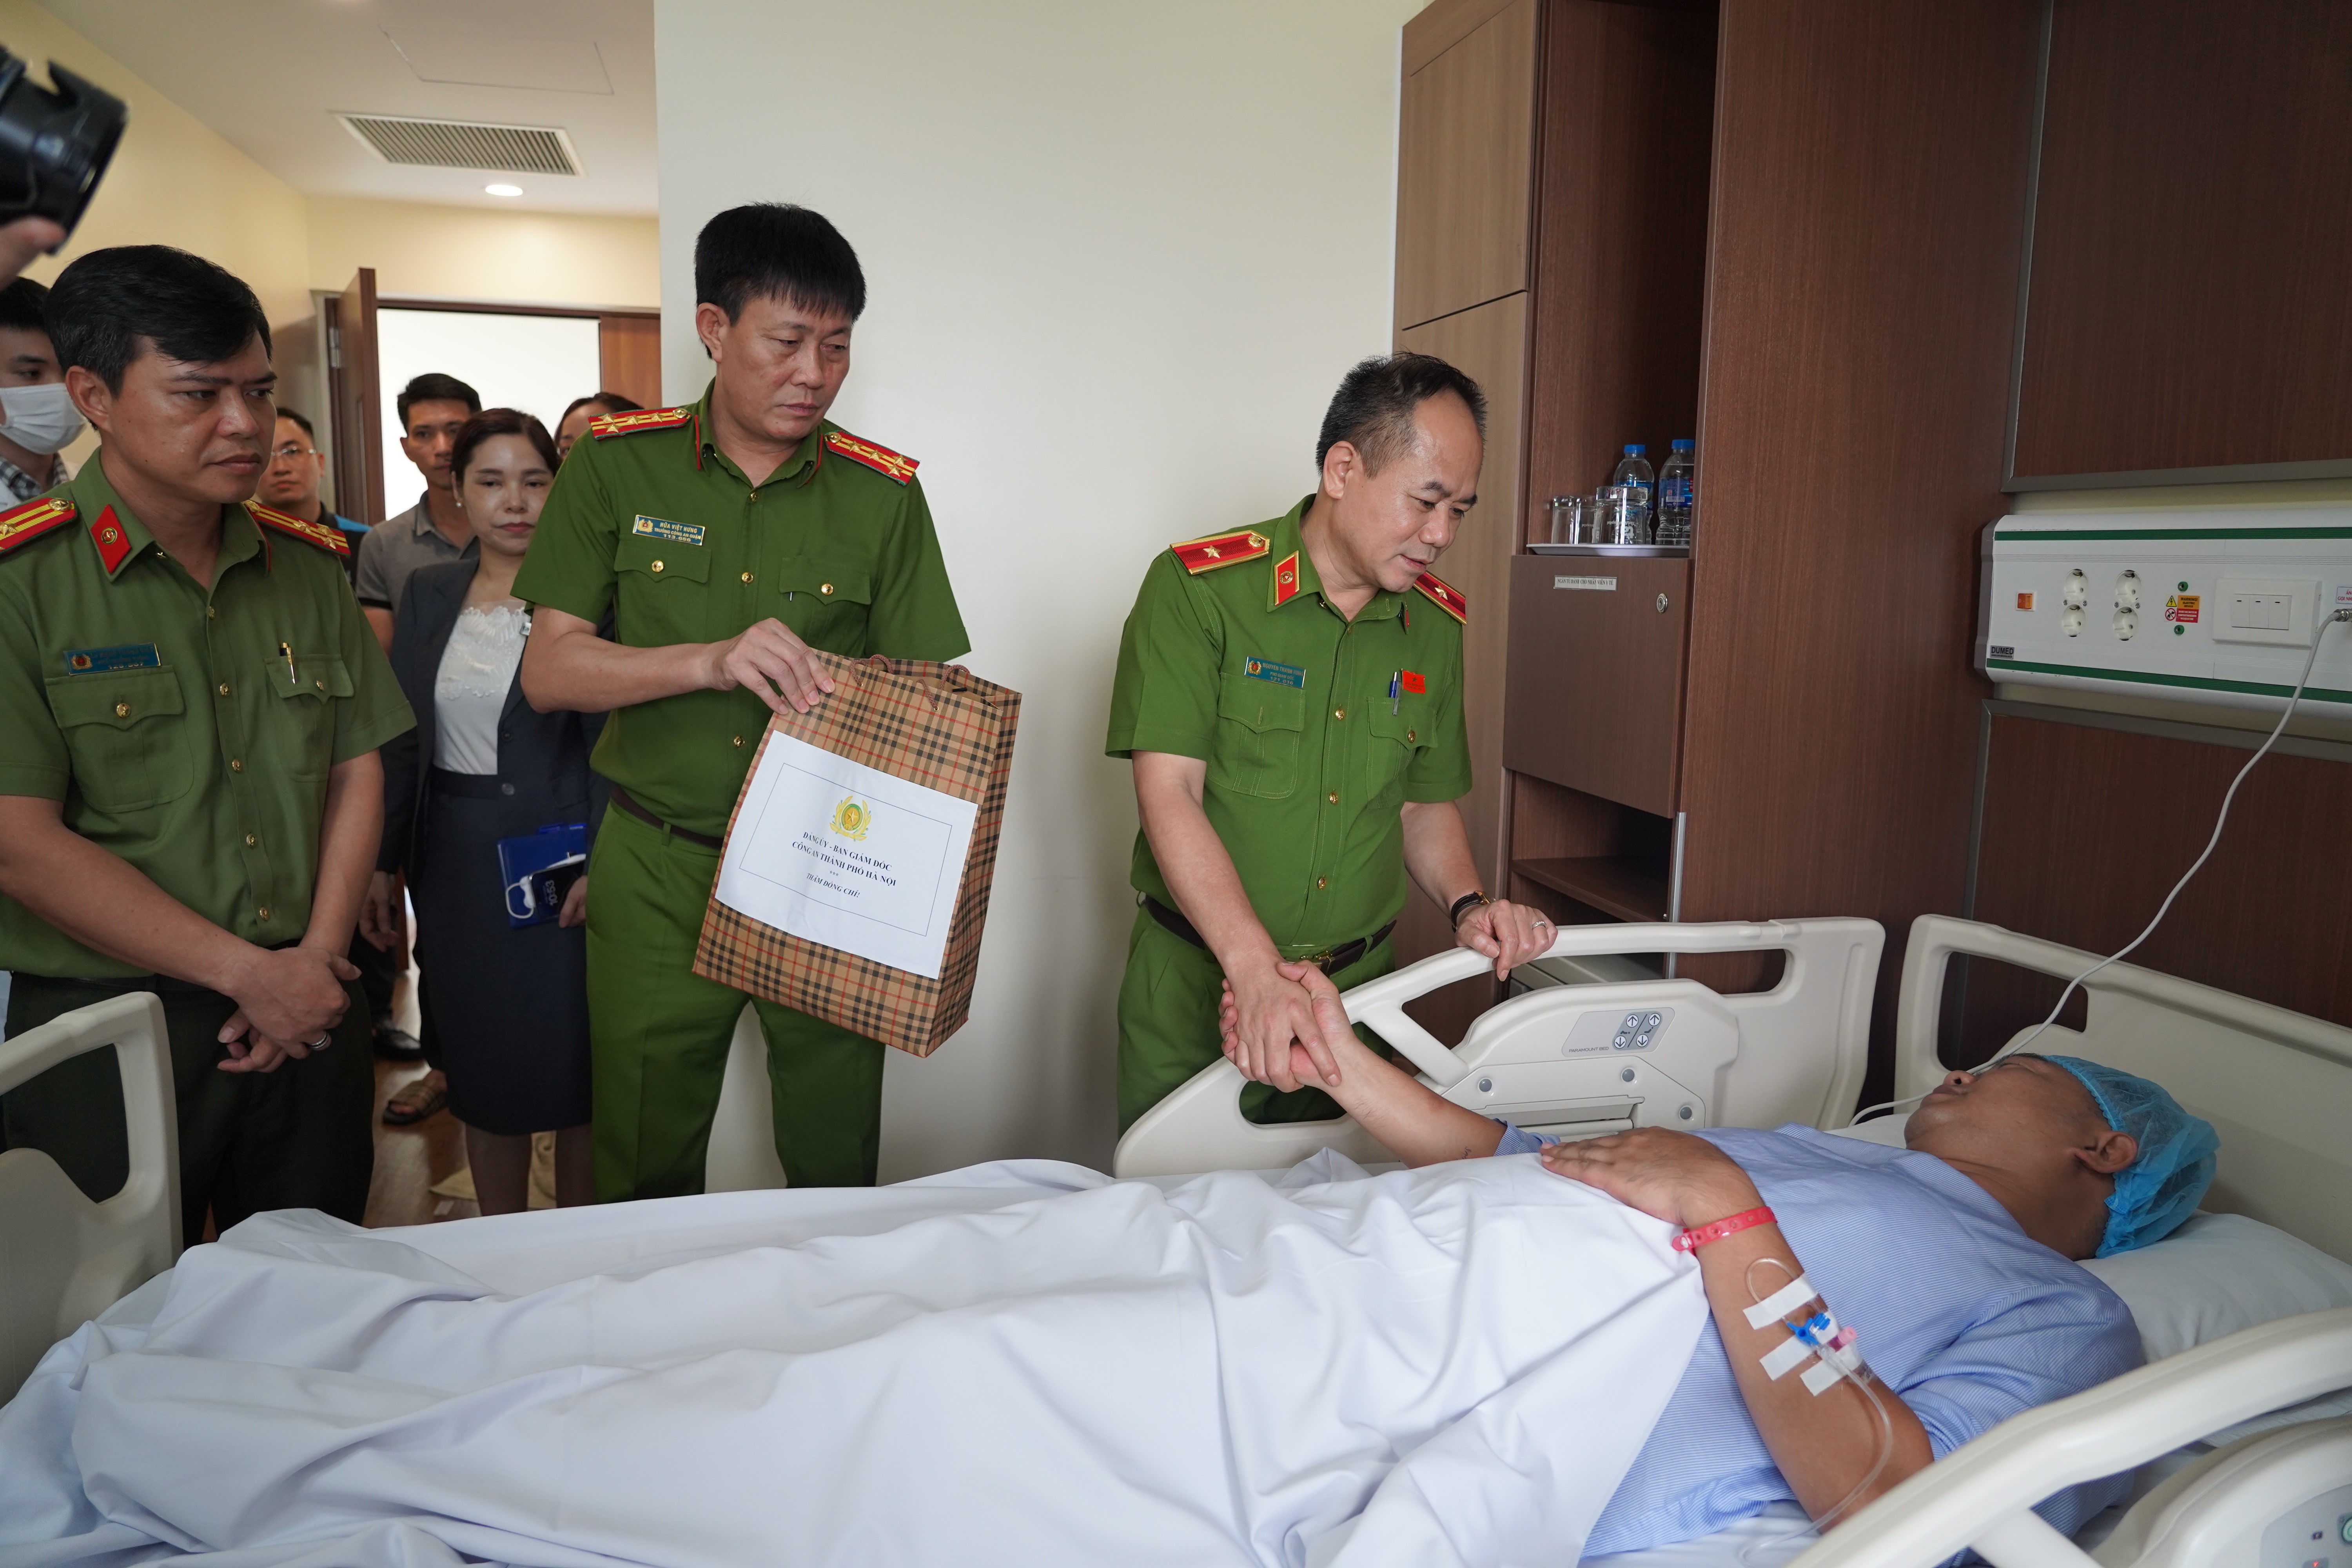 Thiếu tướng Nguyễn Thanh Tùng, Phó Giám đốc CATP, cùng đại diện chỉ huy các phòng chức năng, động viên, thăm hỏi Thiếu tá Nguyễn Anh Tuấn